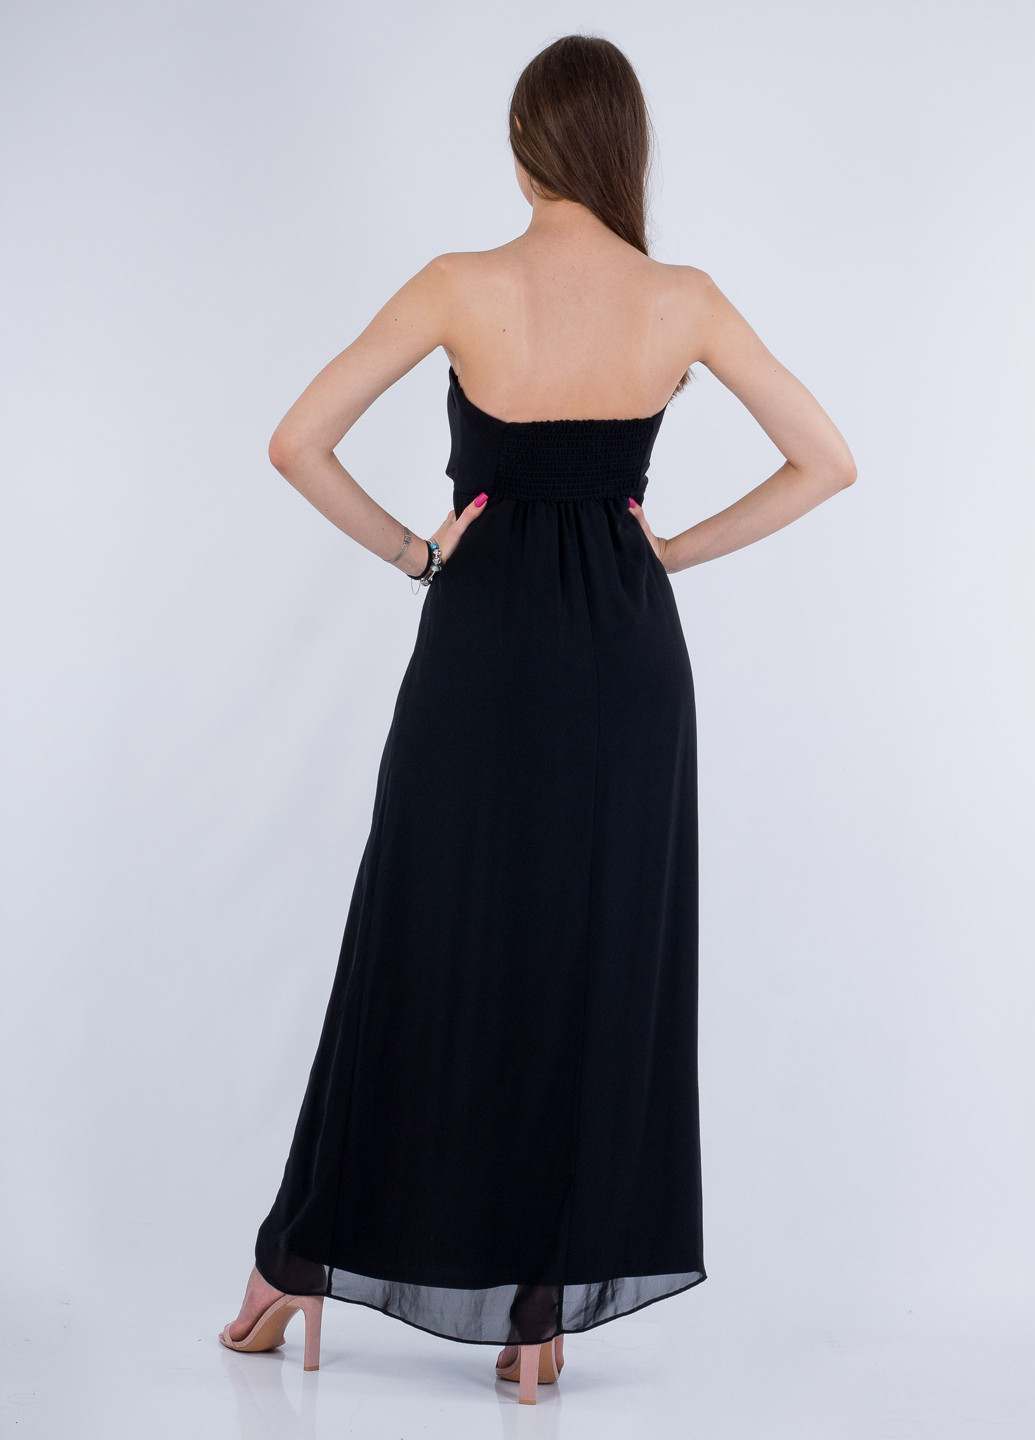 Черное вечернее платье с корсетом, с открытыми плечами Asos однотонное